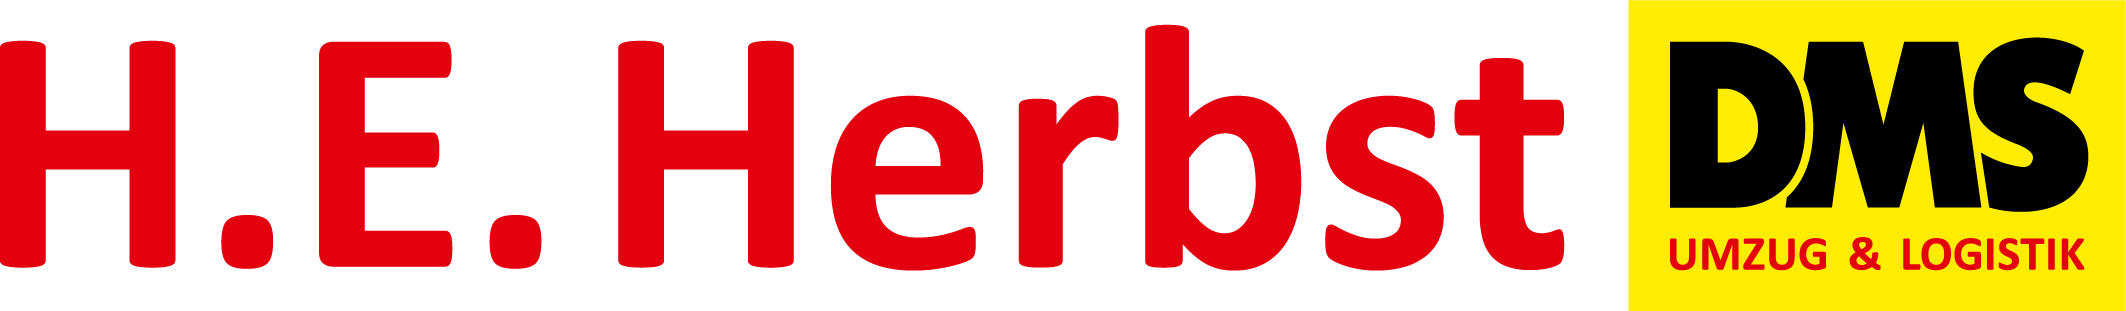 Logo_HE-Herbst_2015